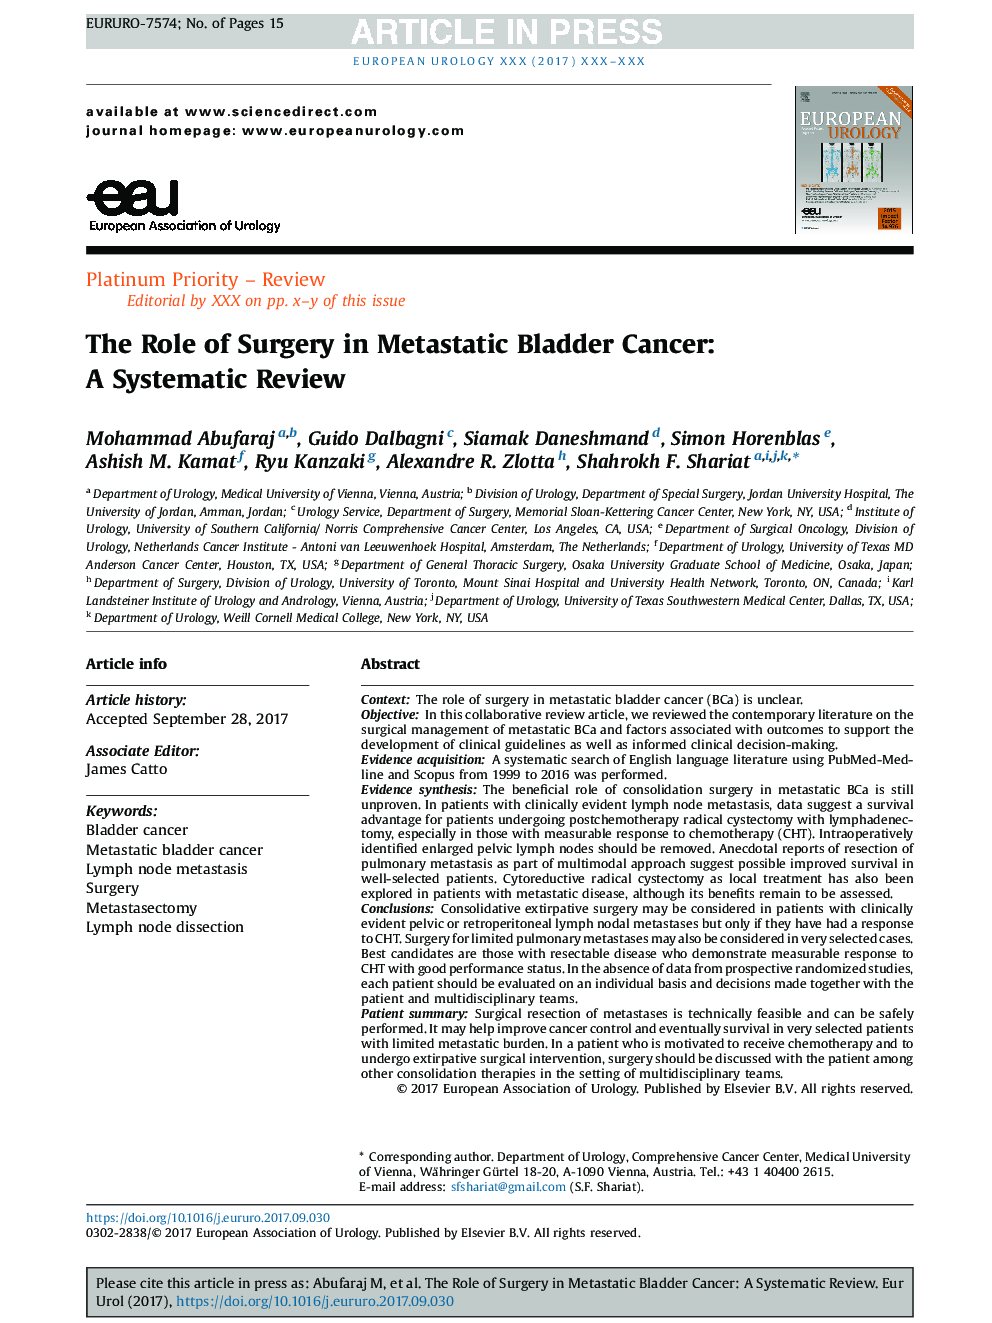 نقش جراحی در سرطان مثانه متاستاتیک: یک بررسی سیستماتیک 